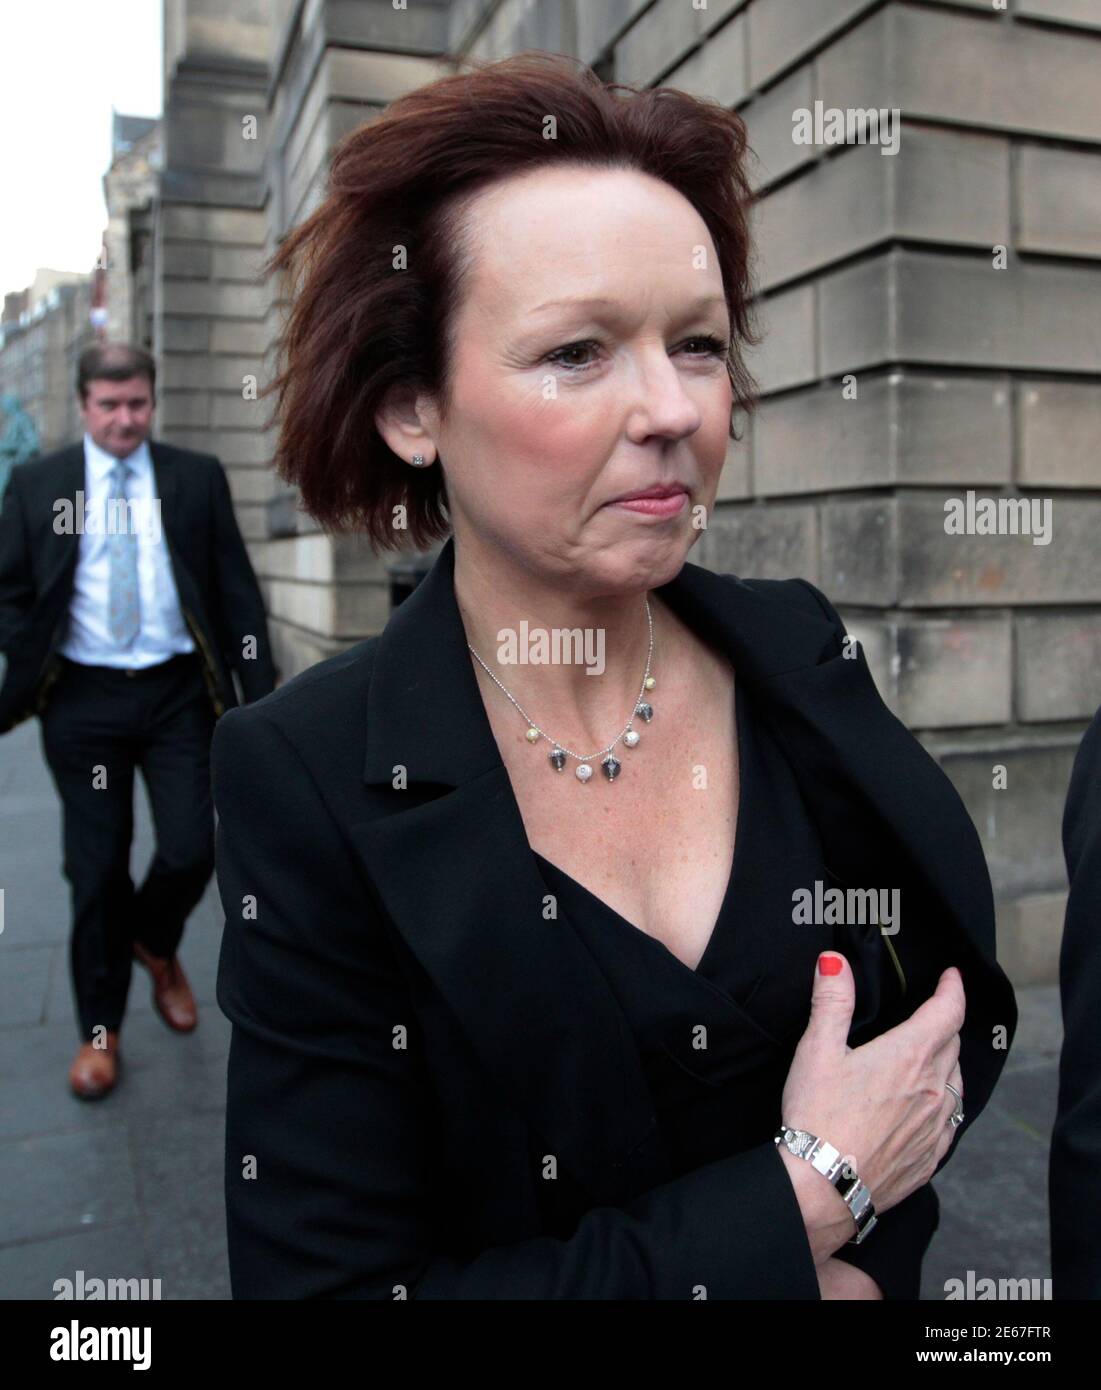 Carol Gillies, la sœur d'Arlene Fraser, s'éloigne de la High court à Édimbourg, Écosse, le 17 juin 2011. NAT Fraser a vu sa condamnation pour le meurtre de sa femme arlene, une fois qu’elle avait été renvoyée, mais qu’elle sera réjugée après que la Cour suprême du Royaume-Uni ait renvoyé l’affaire devant la Cour d’appel d’Édimbourg et que les juges de la Cour d’appel d’Édimbourg aient accueilli la demande de nouveau procès, médias locaux signalés. REUTERS/David Moir (BRITAINCREME - Tags: CRIME LAW SOCIETY) Banque D'Images